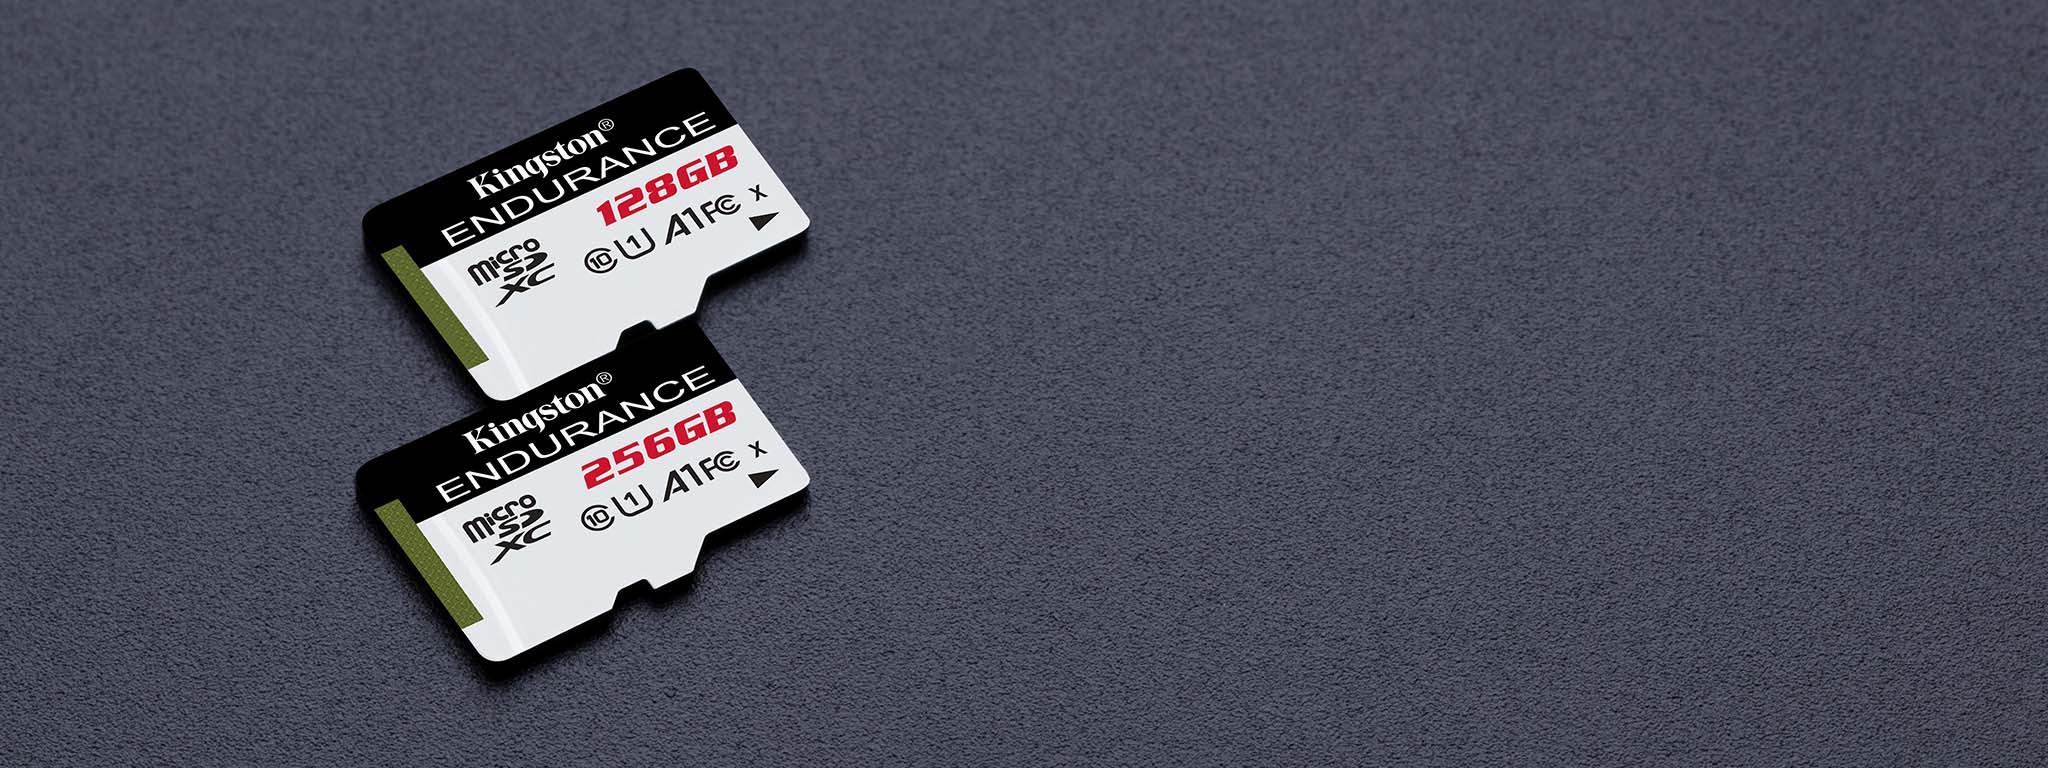 Zwei High-Endurance microSD Karten mit einer Kapazität von 128GB und 64GB auf einer schwarzen Oberfläche